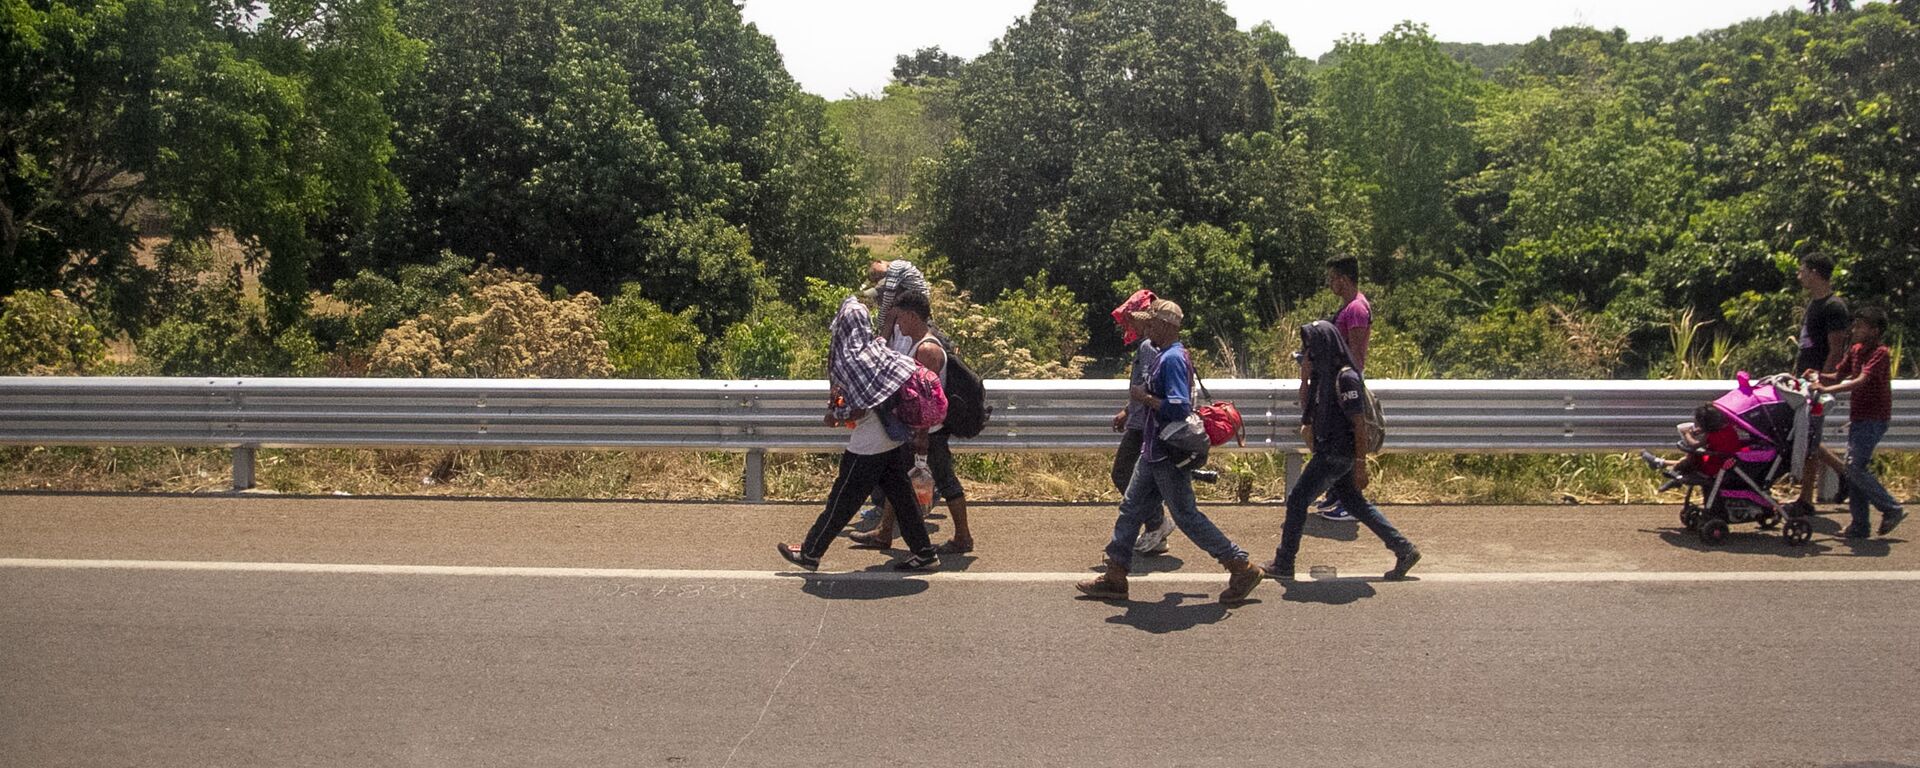 Miembros de la caravana migrante caminan sobre la carretera México 200, rumbo al norte del país, Tapachula, Chiapas, México - Sputnik Mundo, 1920, 01.11.2021